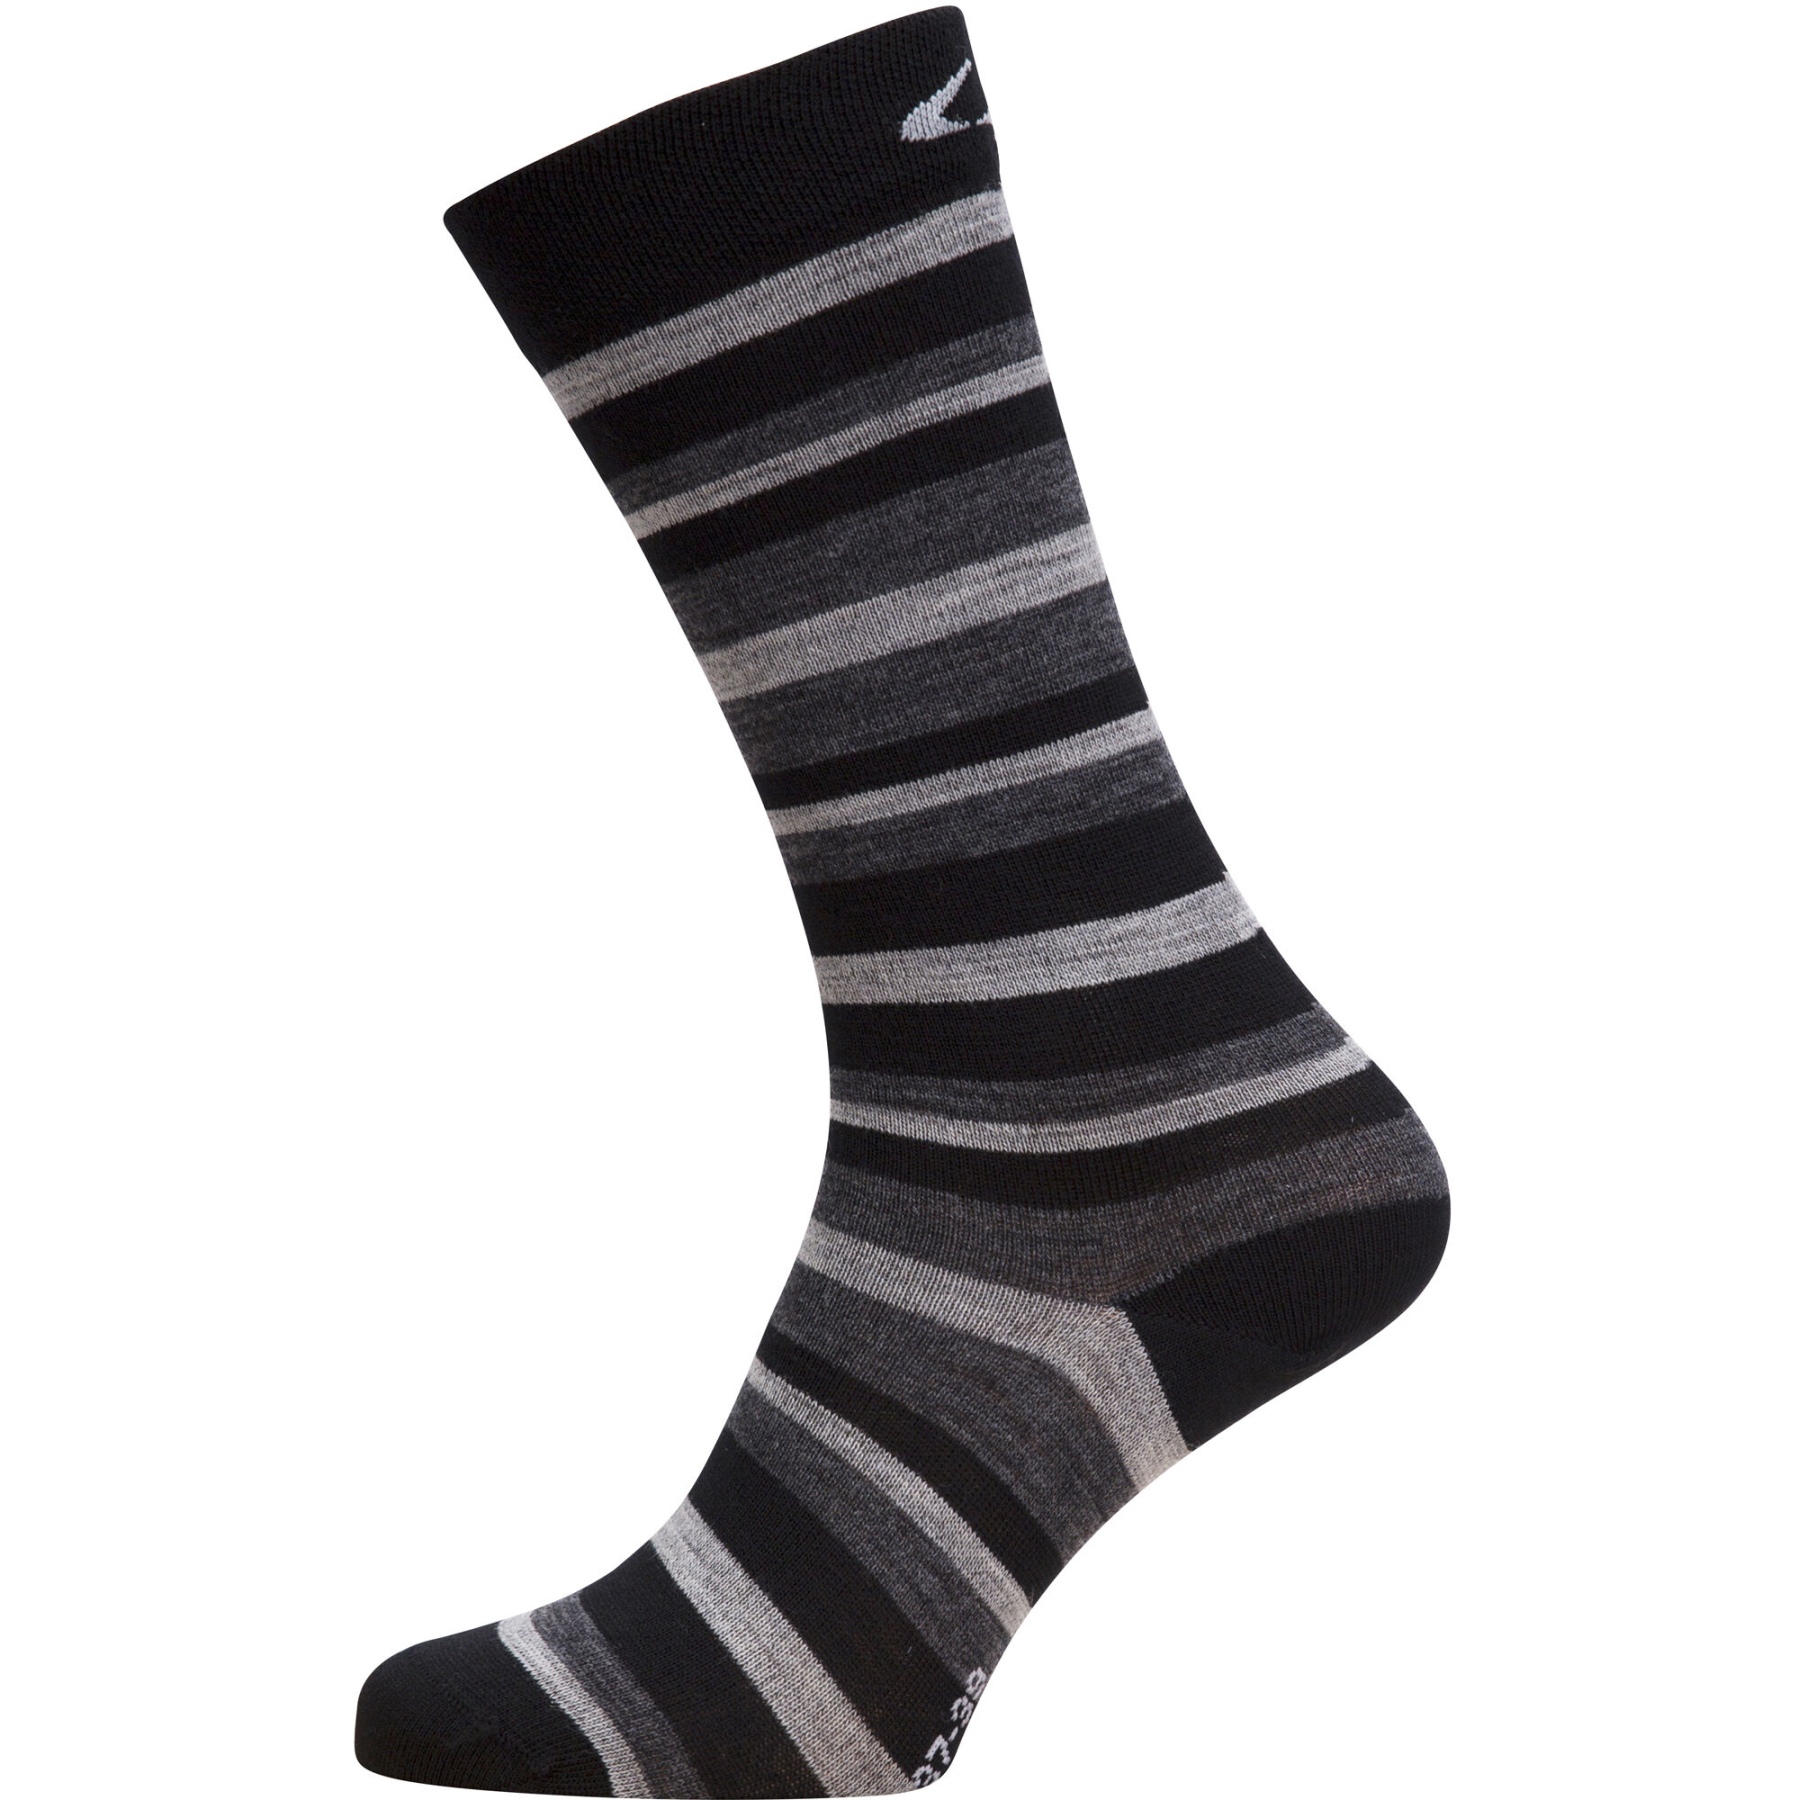 Produktbild von Ulvang Everyday Light Socken - Black/Charcoal Melange/Grey Melange